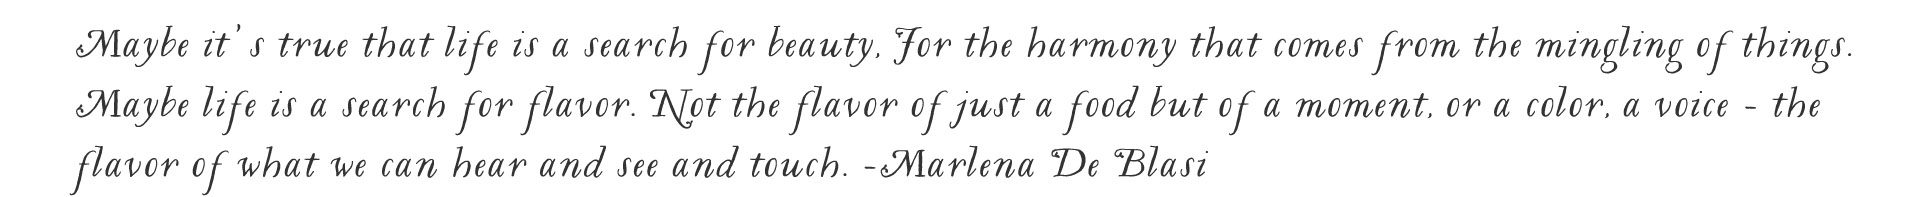 Marlena De Blasi quote